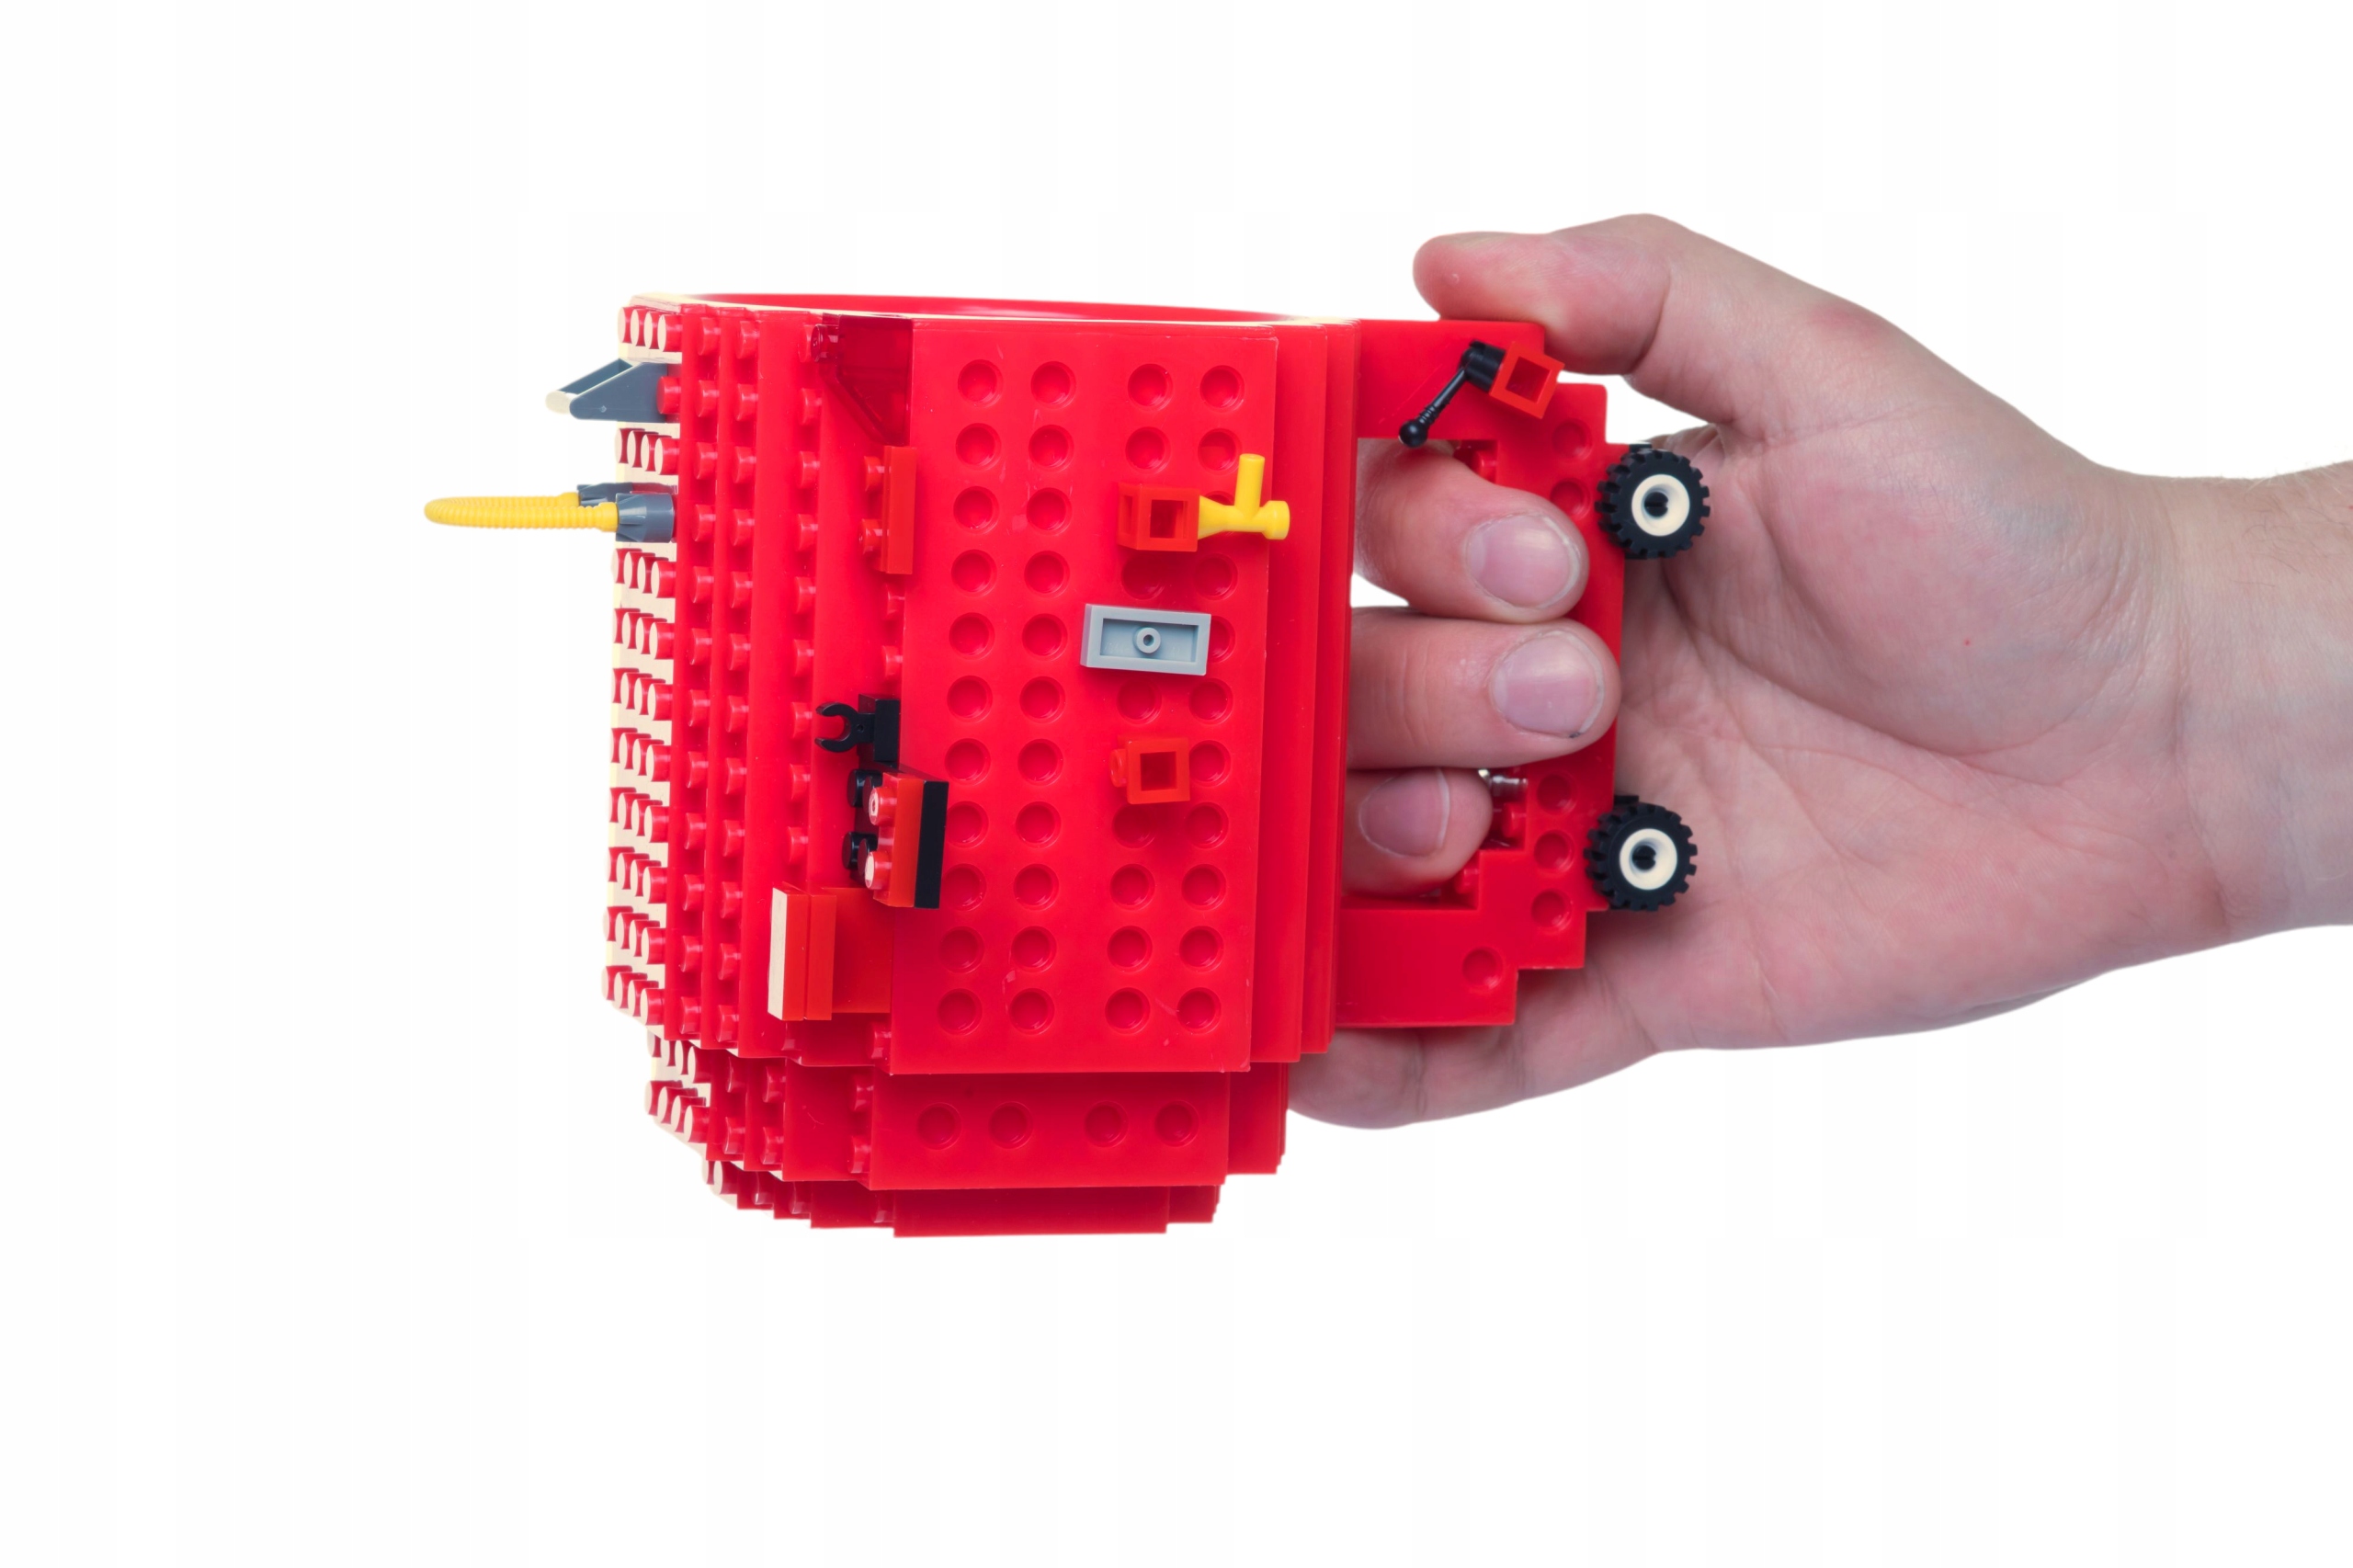 KREATYWNY DUŻY KUBEK KLOCKOWY LEGO KLOCKI GRATIS Waga produktu z opakowaniem jednostkowym 0.3 kg